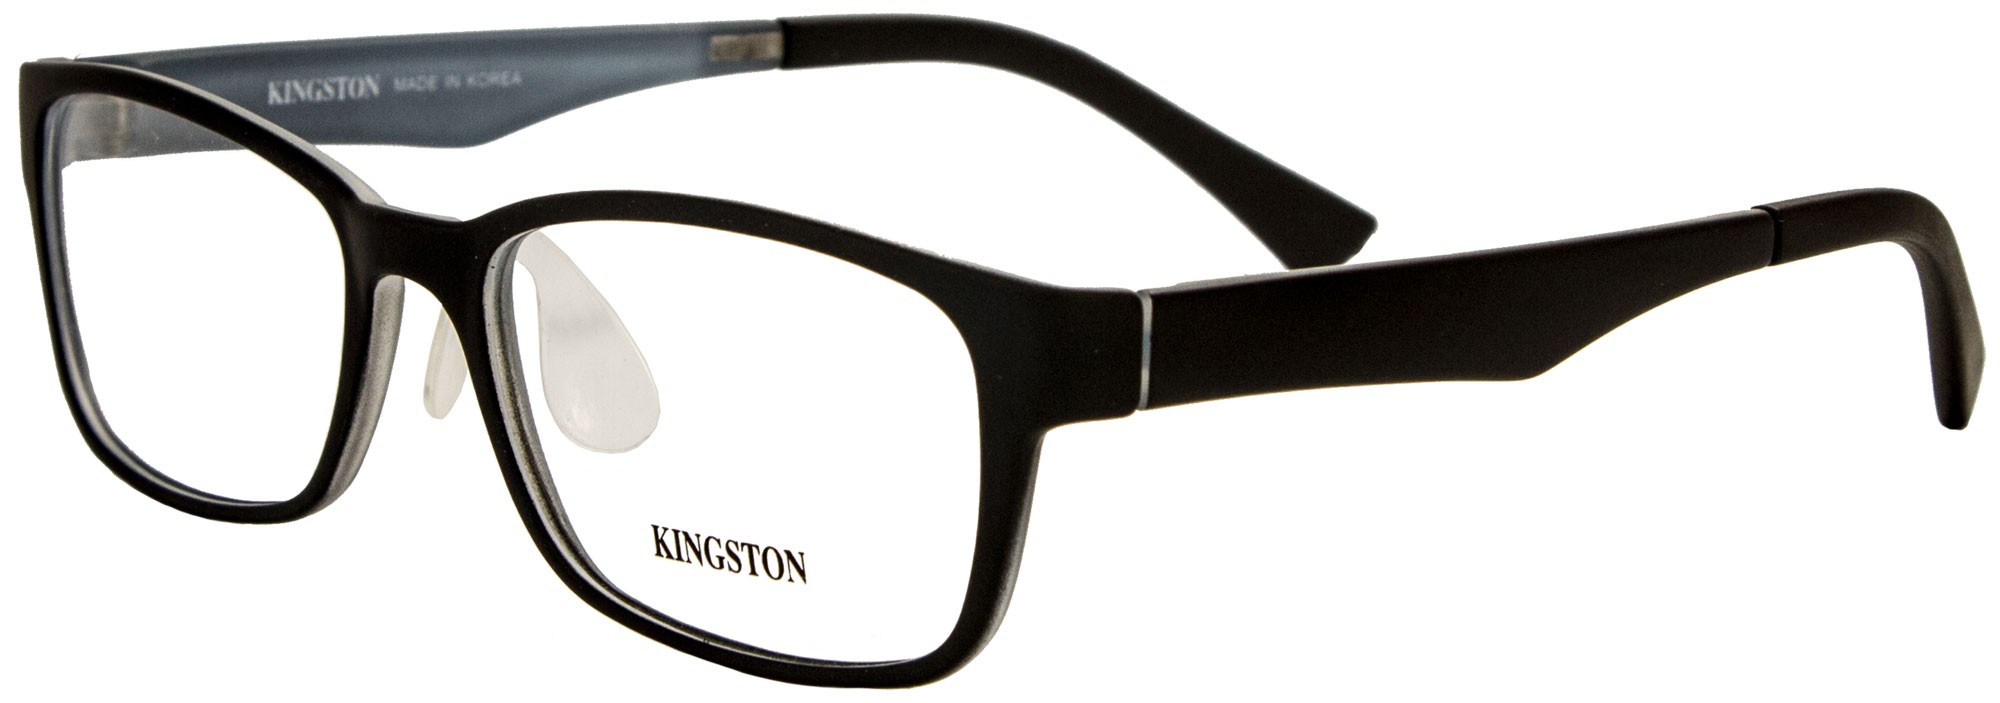 Kingston 3003 C1A 2